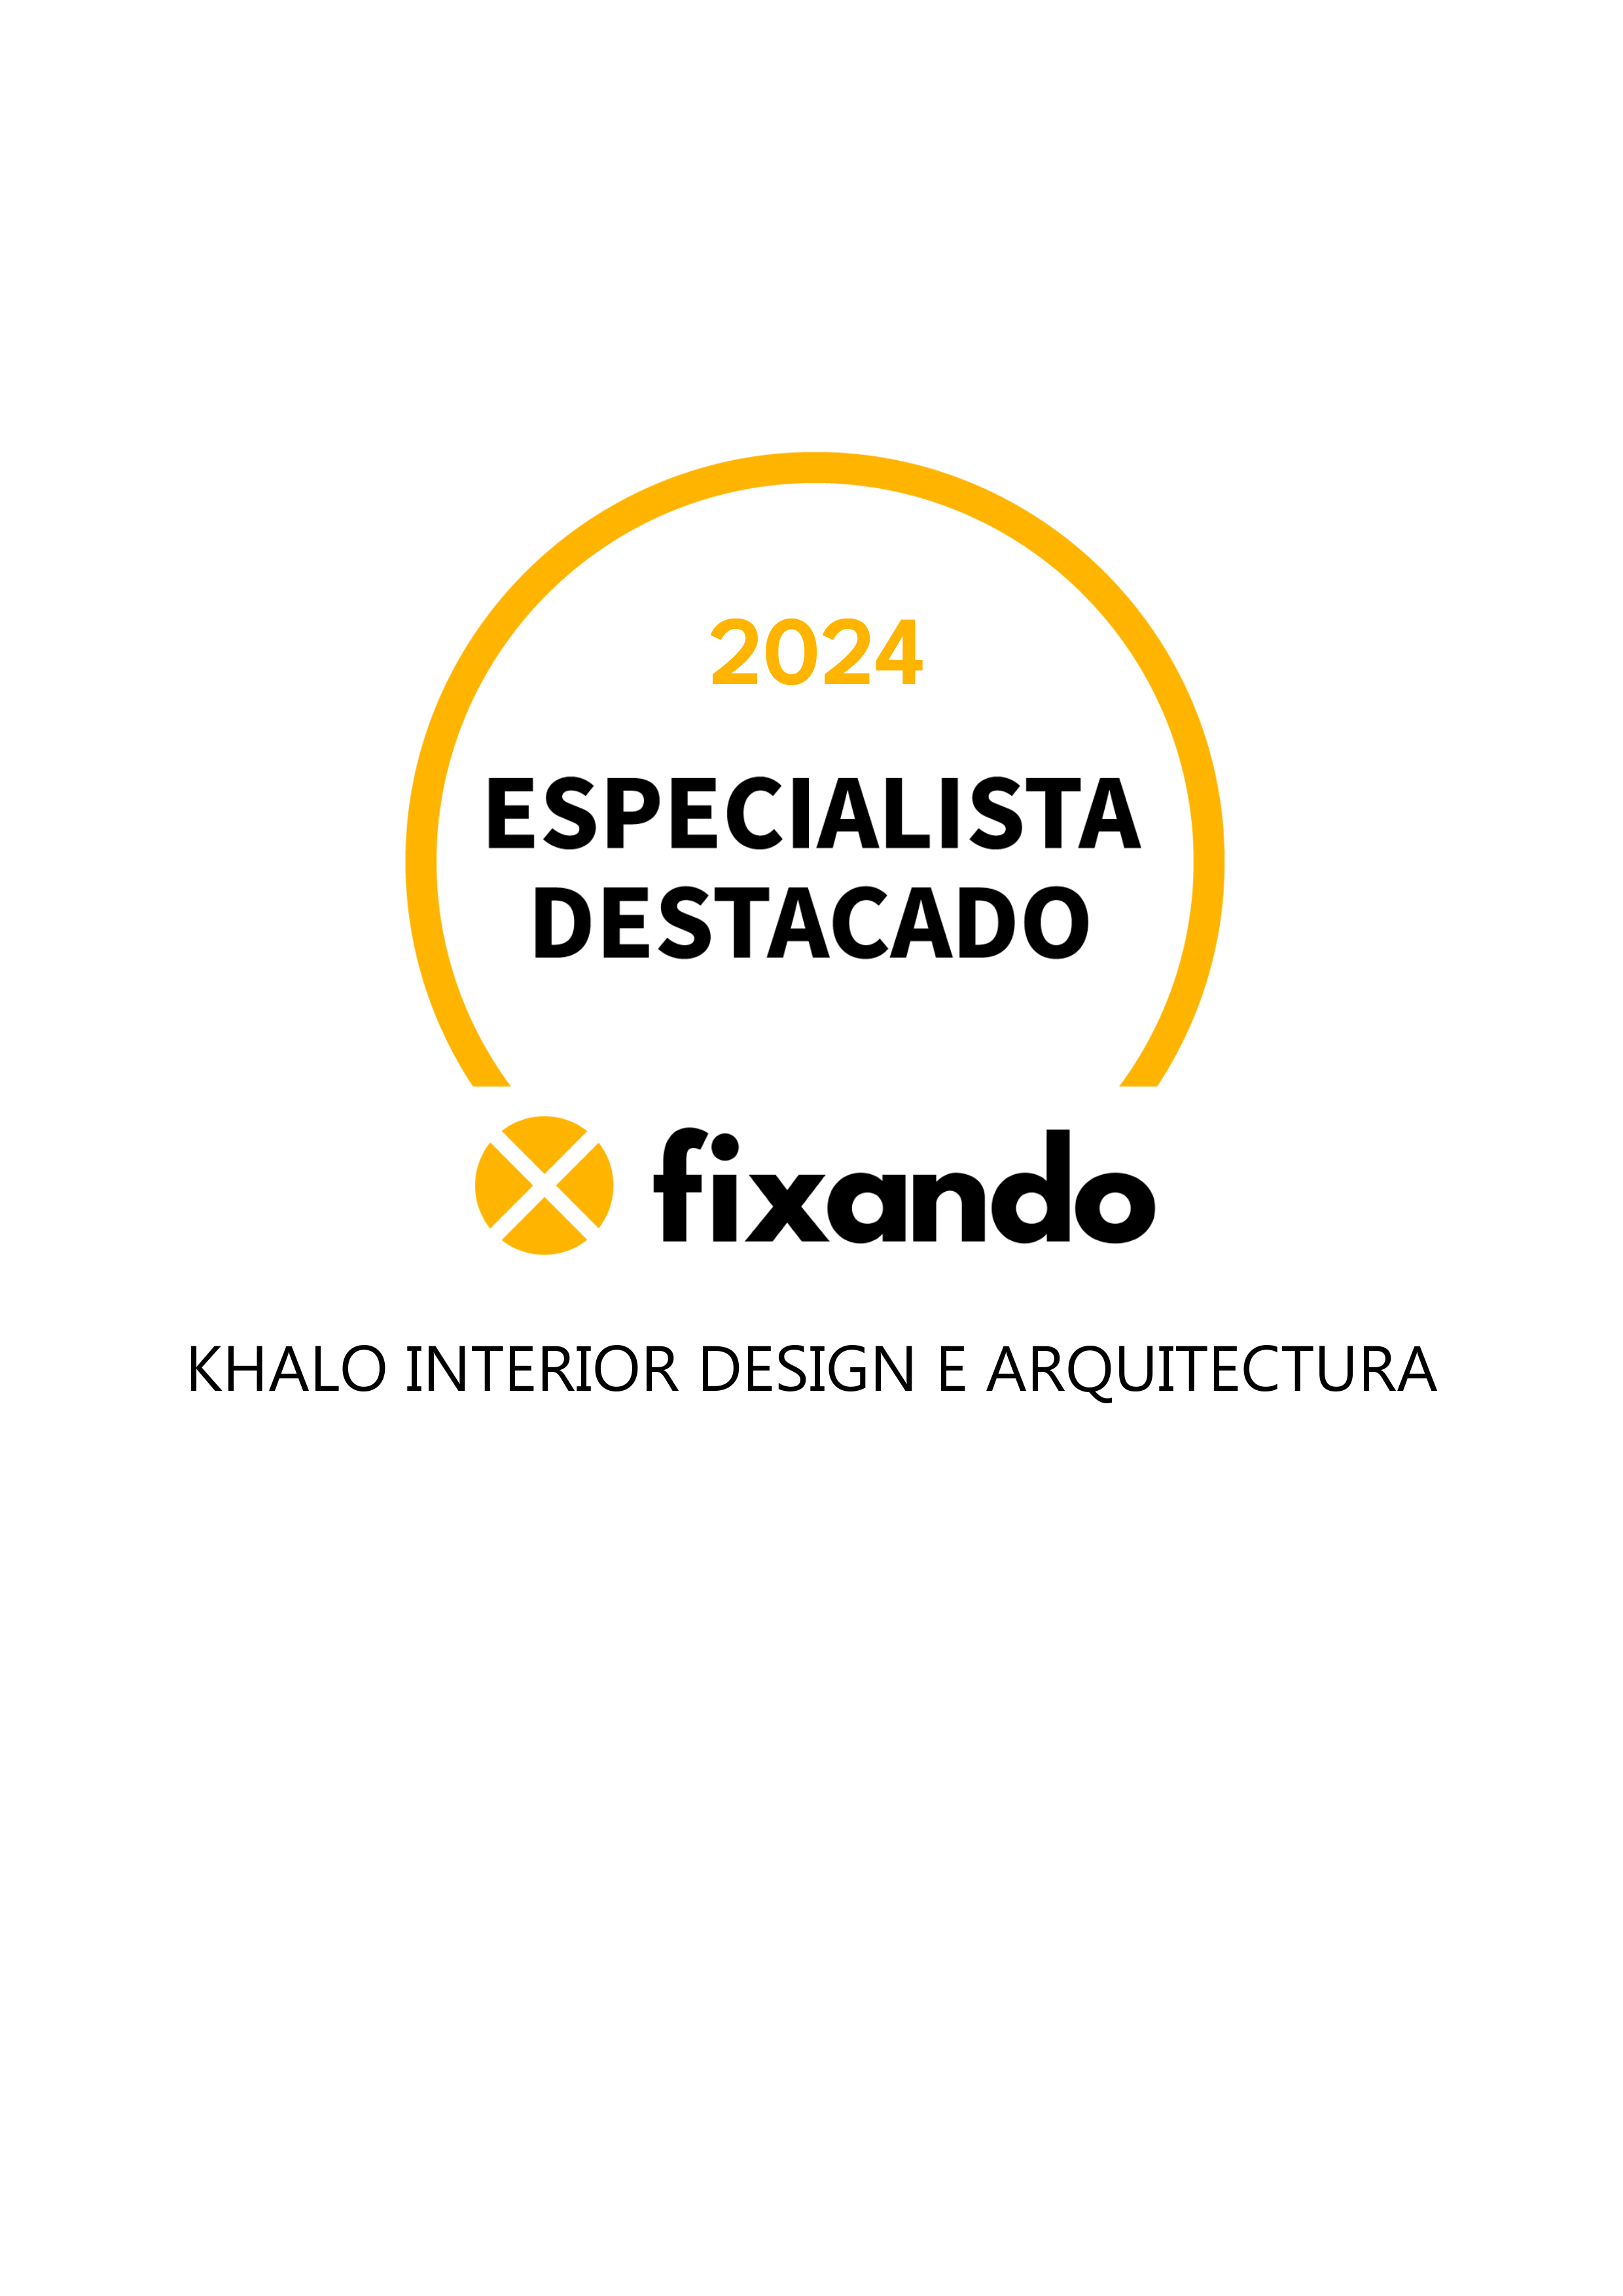 Khalo interior Design e Arquitectura - Leiria - Decoração de Interiores Online